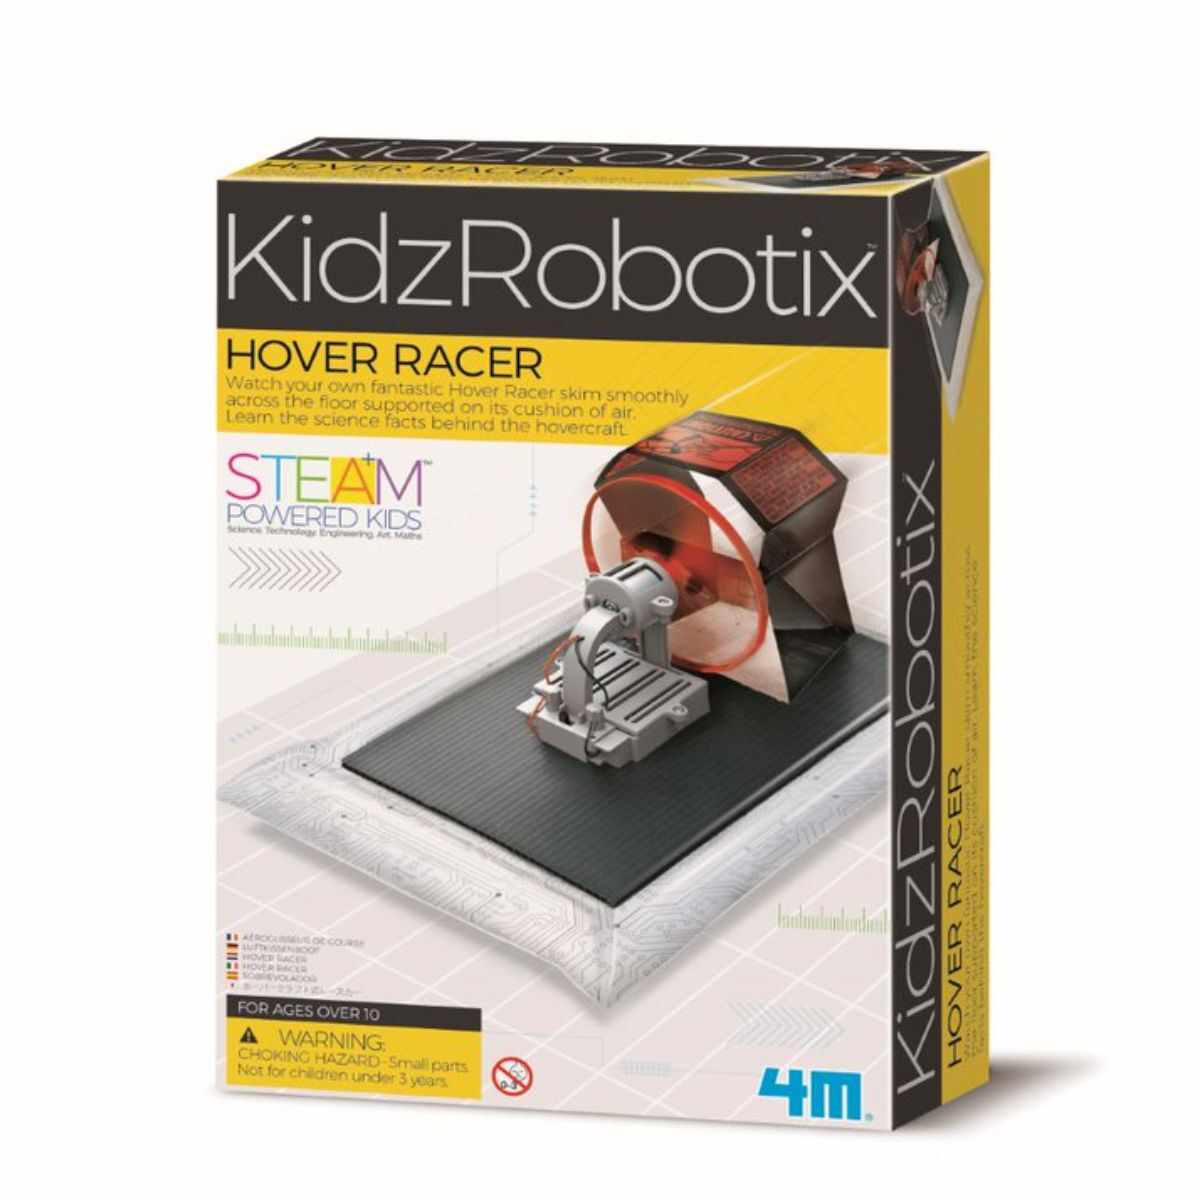 Kit constructie robot, 4M, Hover Racer Kidz Robotix